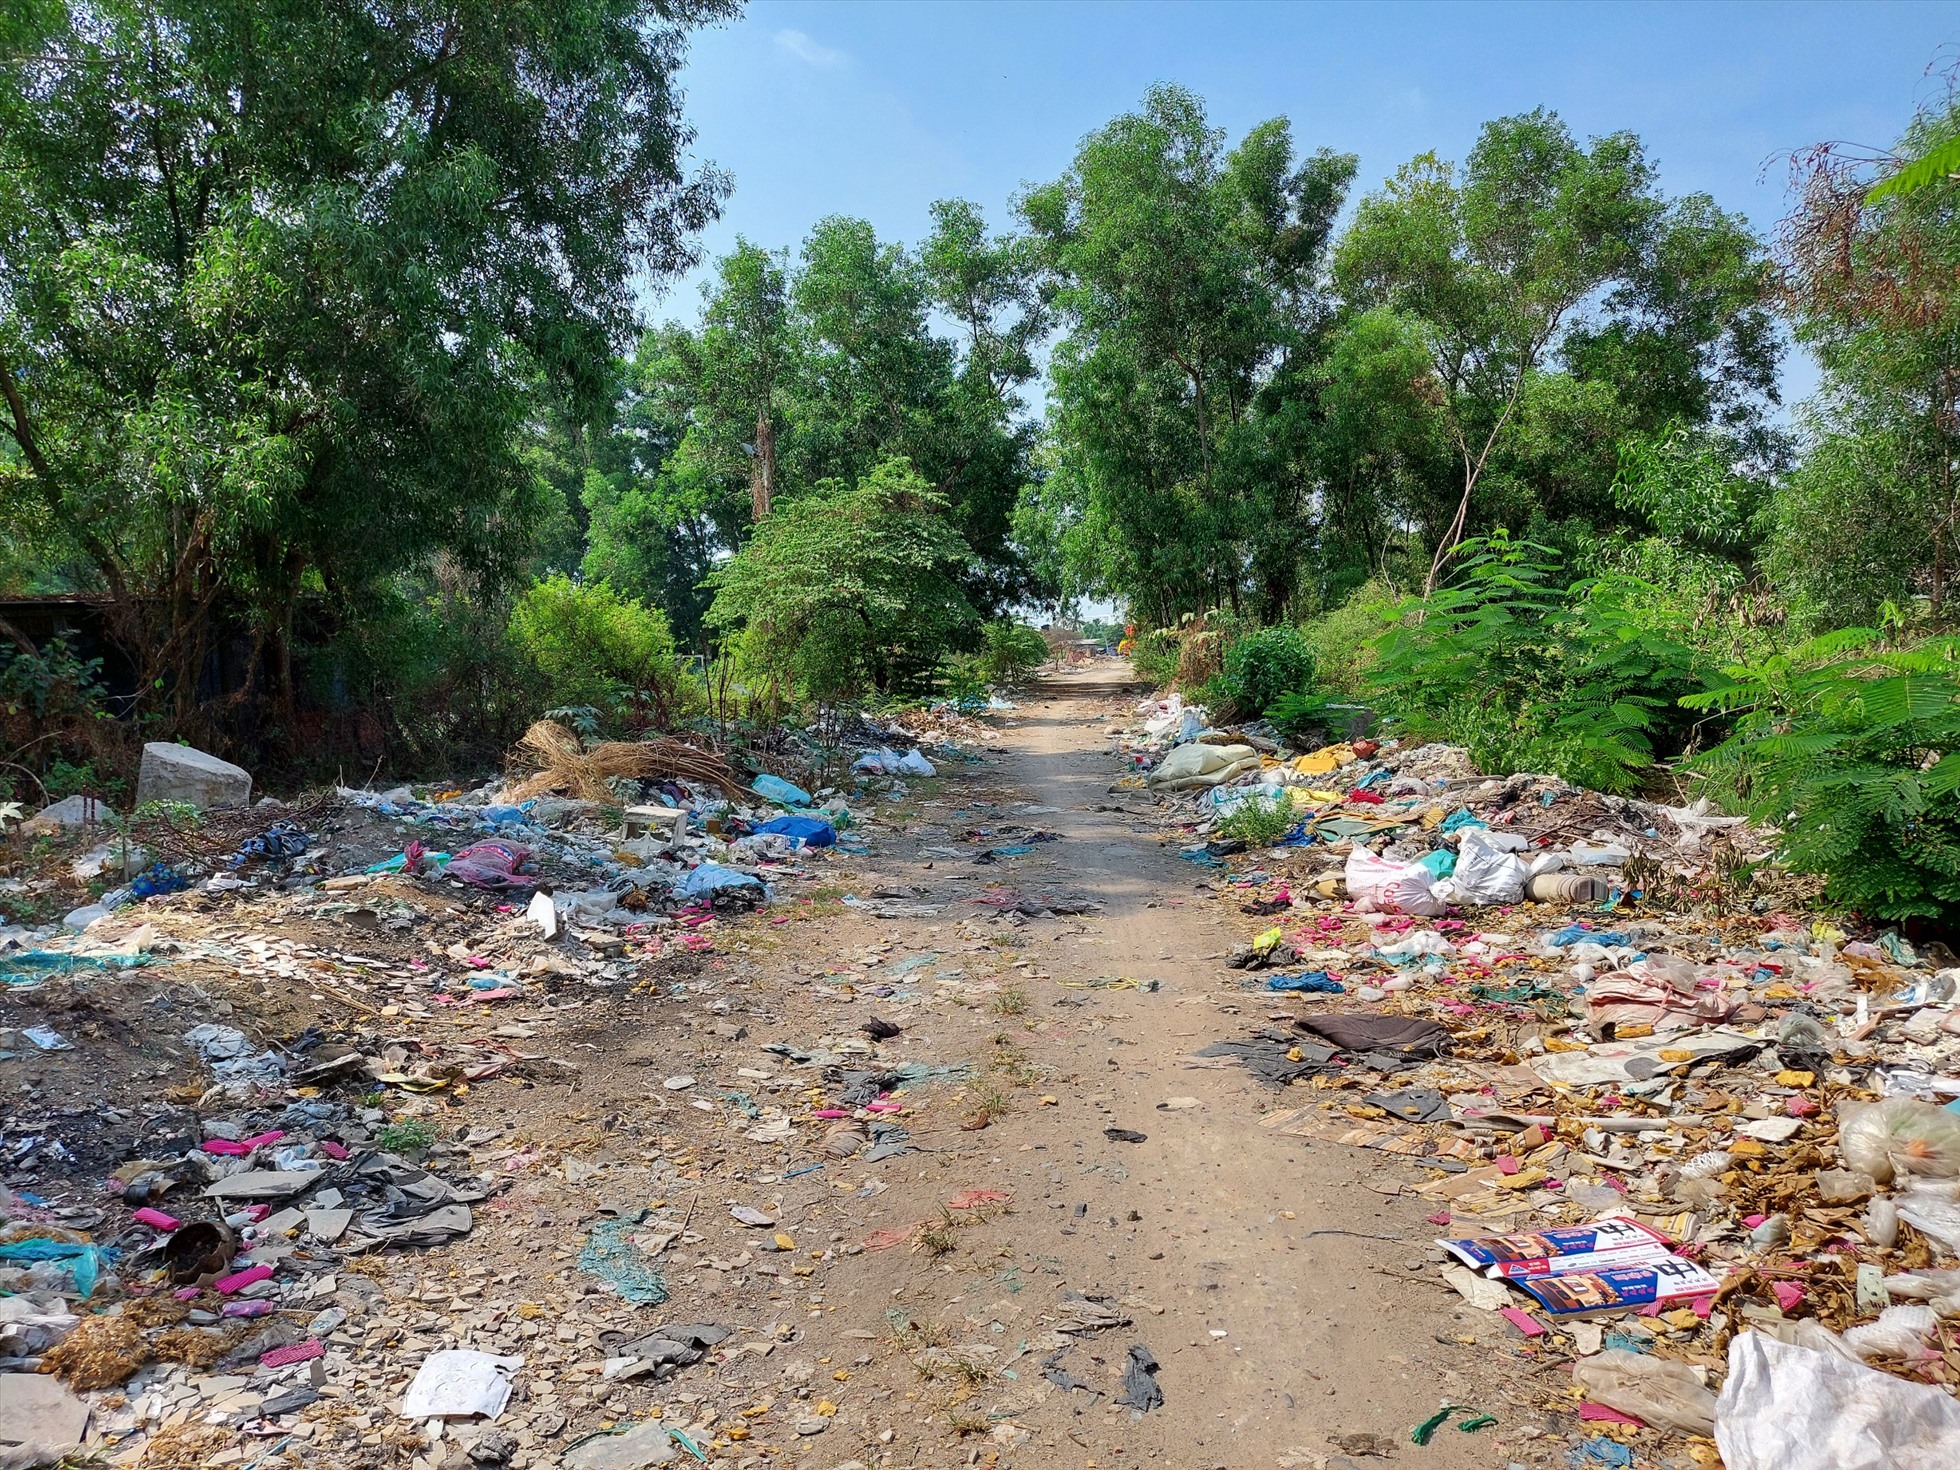 Nhiều nơi trở thành điểm đổ rác, tập kết xà bần của người dân trong khu vực.